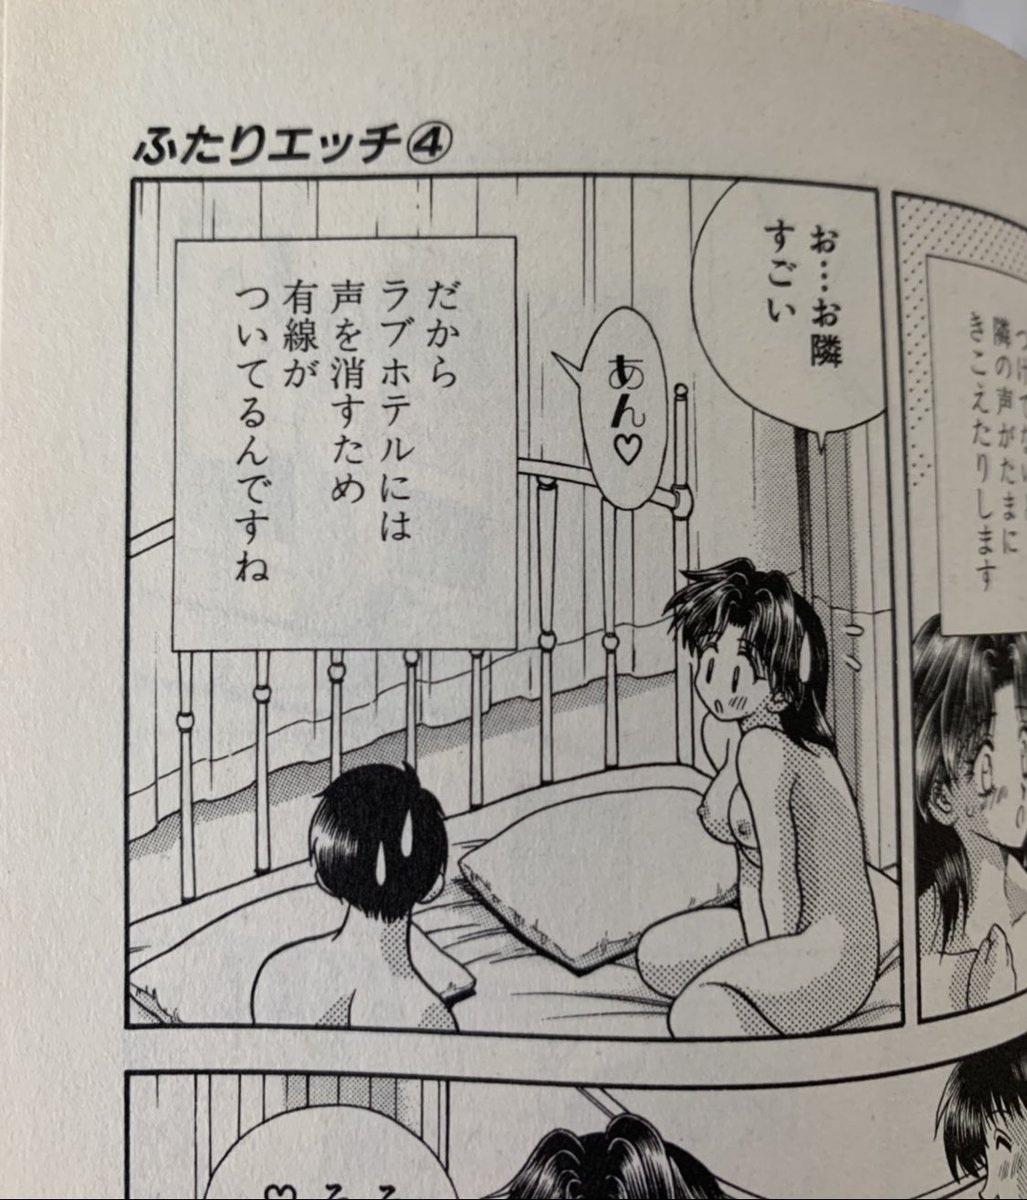 神崎愛桜 ｶﾝｻﾞｷｱｻ ふたりエッチまだ全巻読めてないからネカフェに行かなければ あー 大人買いしたい